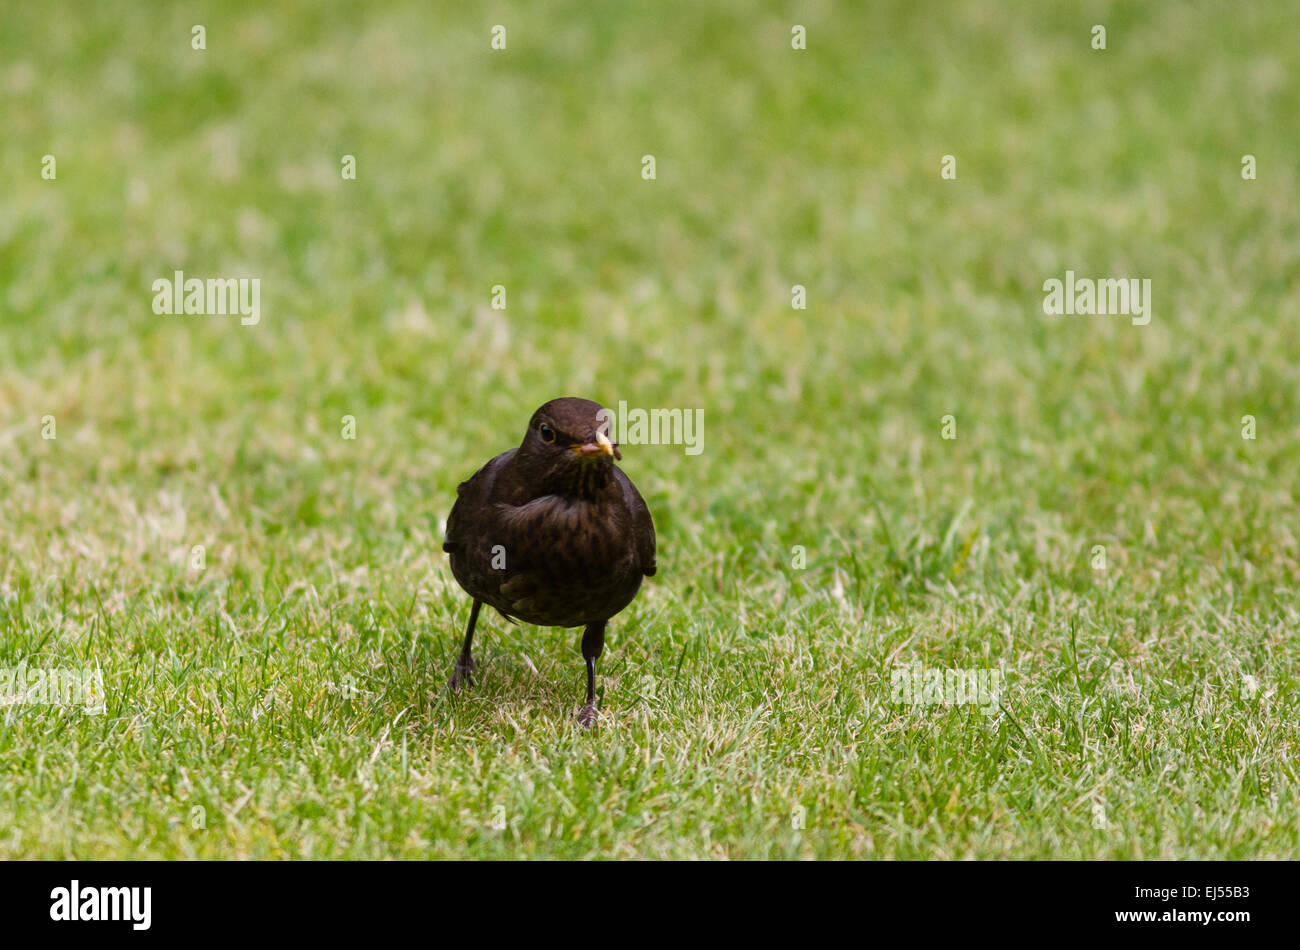 A blackbird on a lawn in a suburban Surrey garden Stock Photo